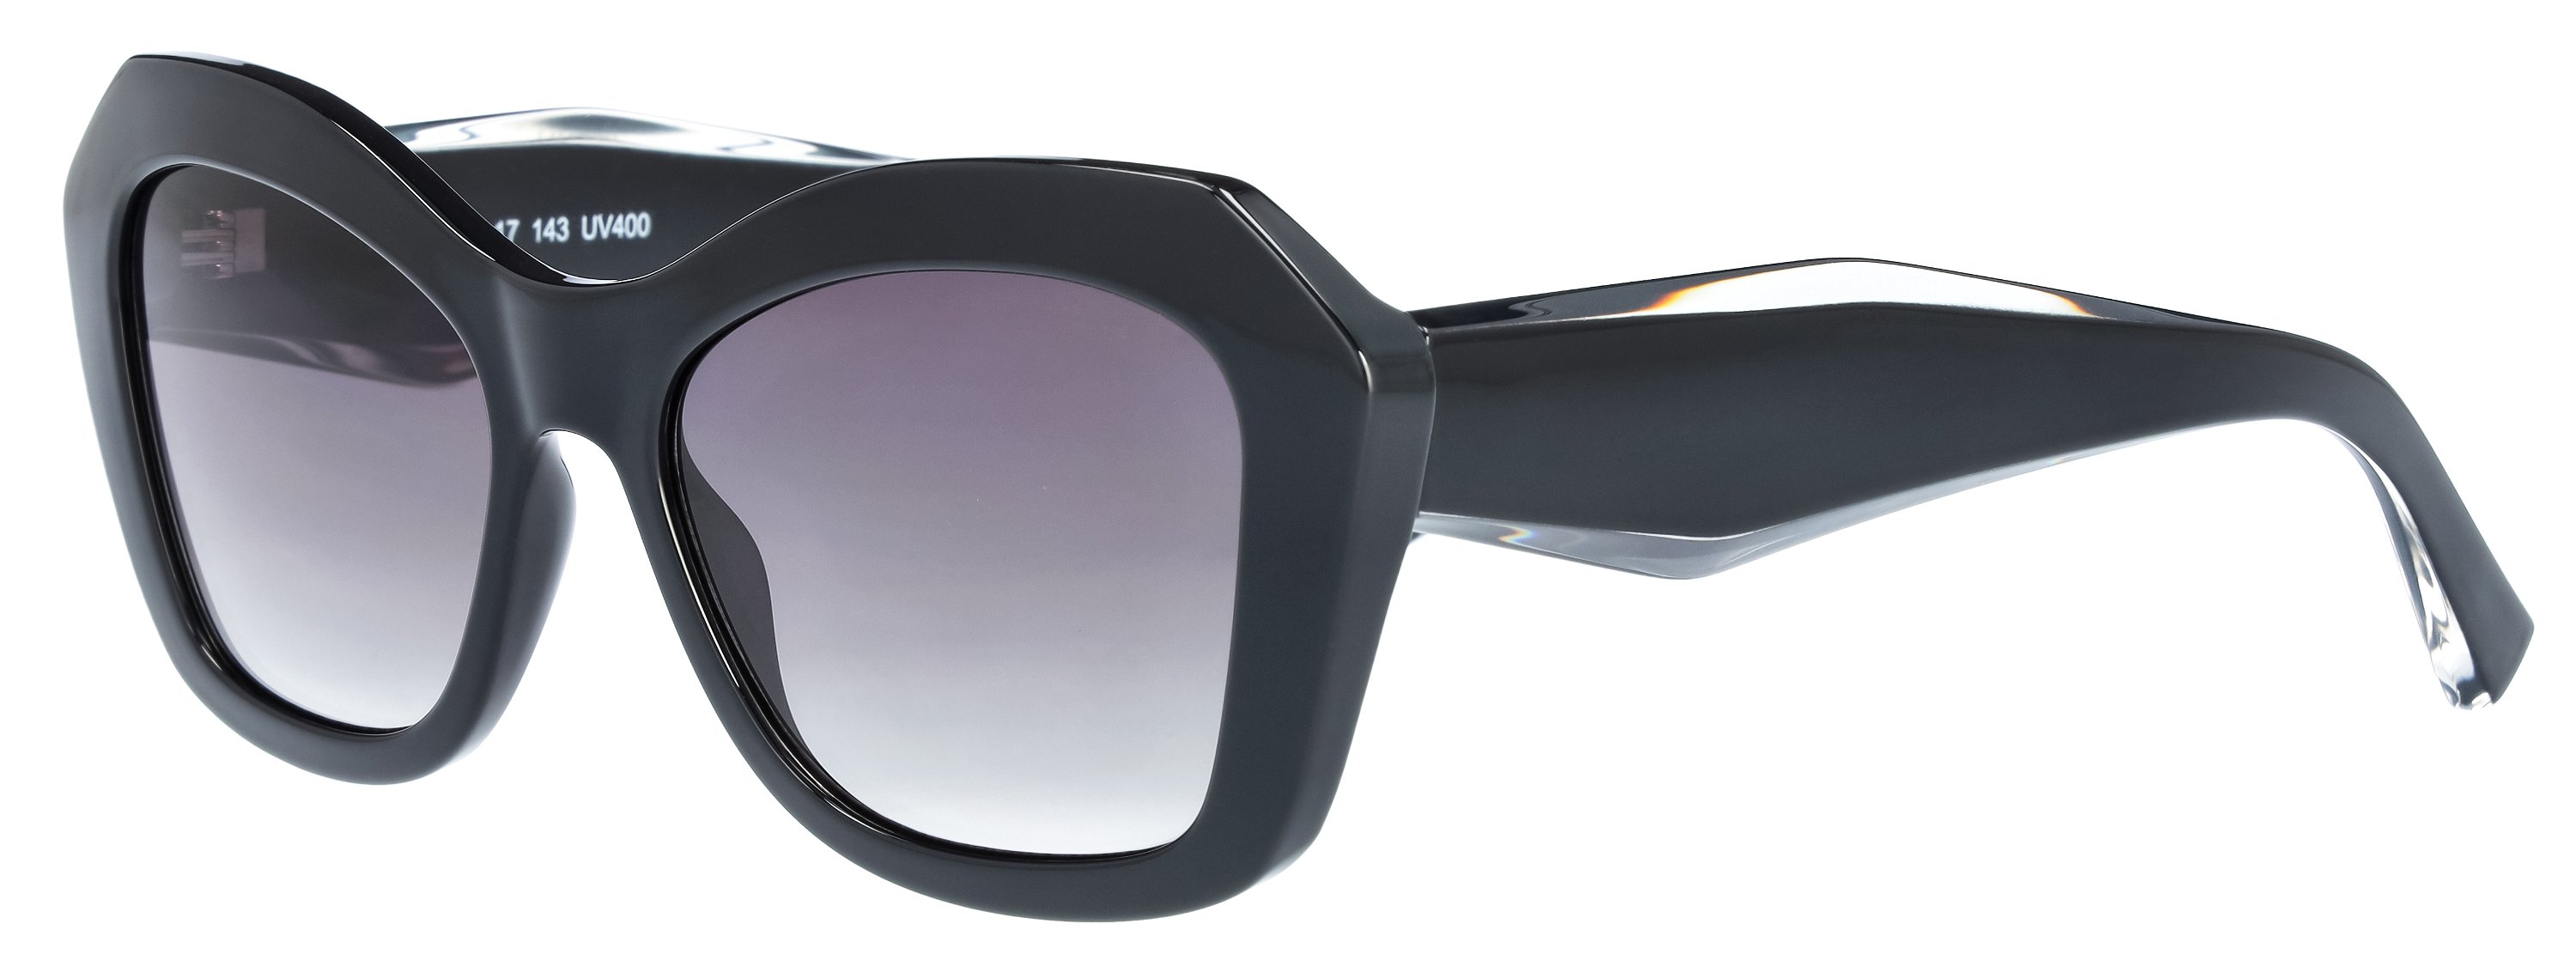 Das Bild zeigt die Sonnenbrille 721142 von der Marke Abele Optik in schwarz.